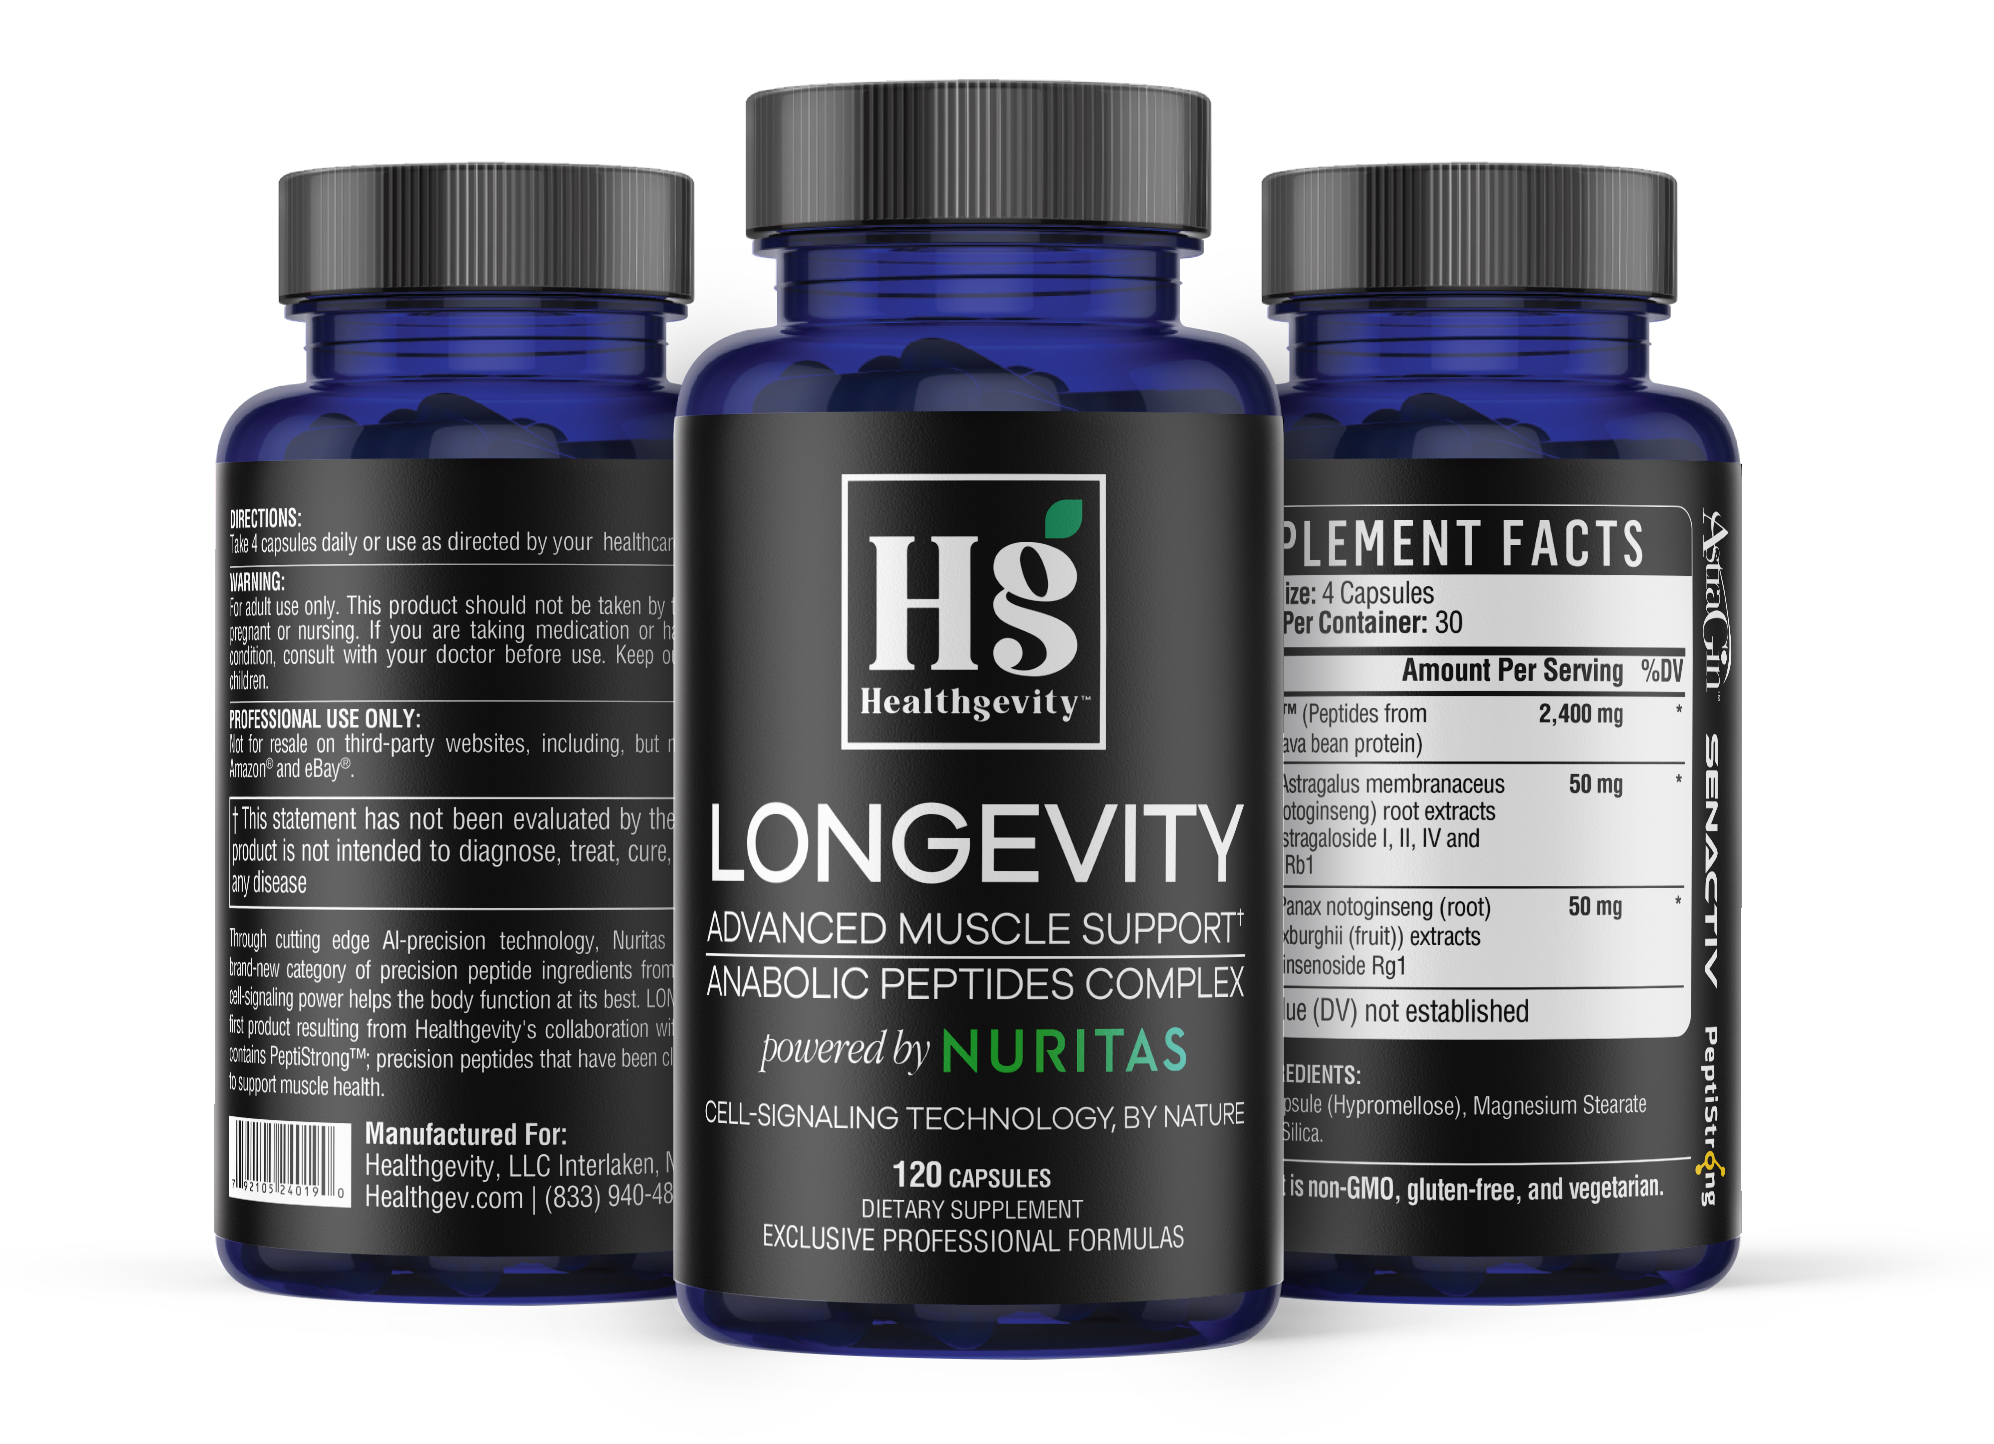 Healthgevity Launches Longevity powered by Nuritas